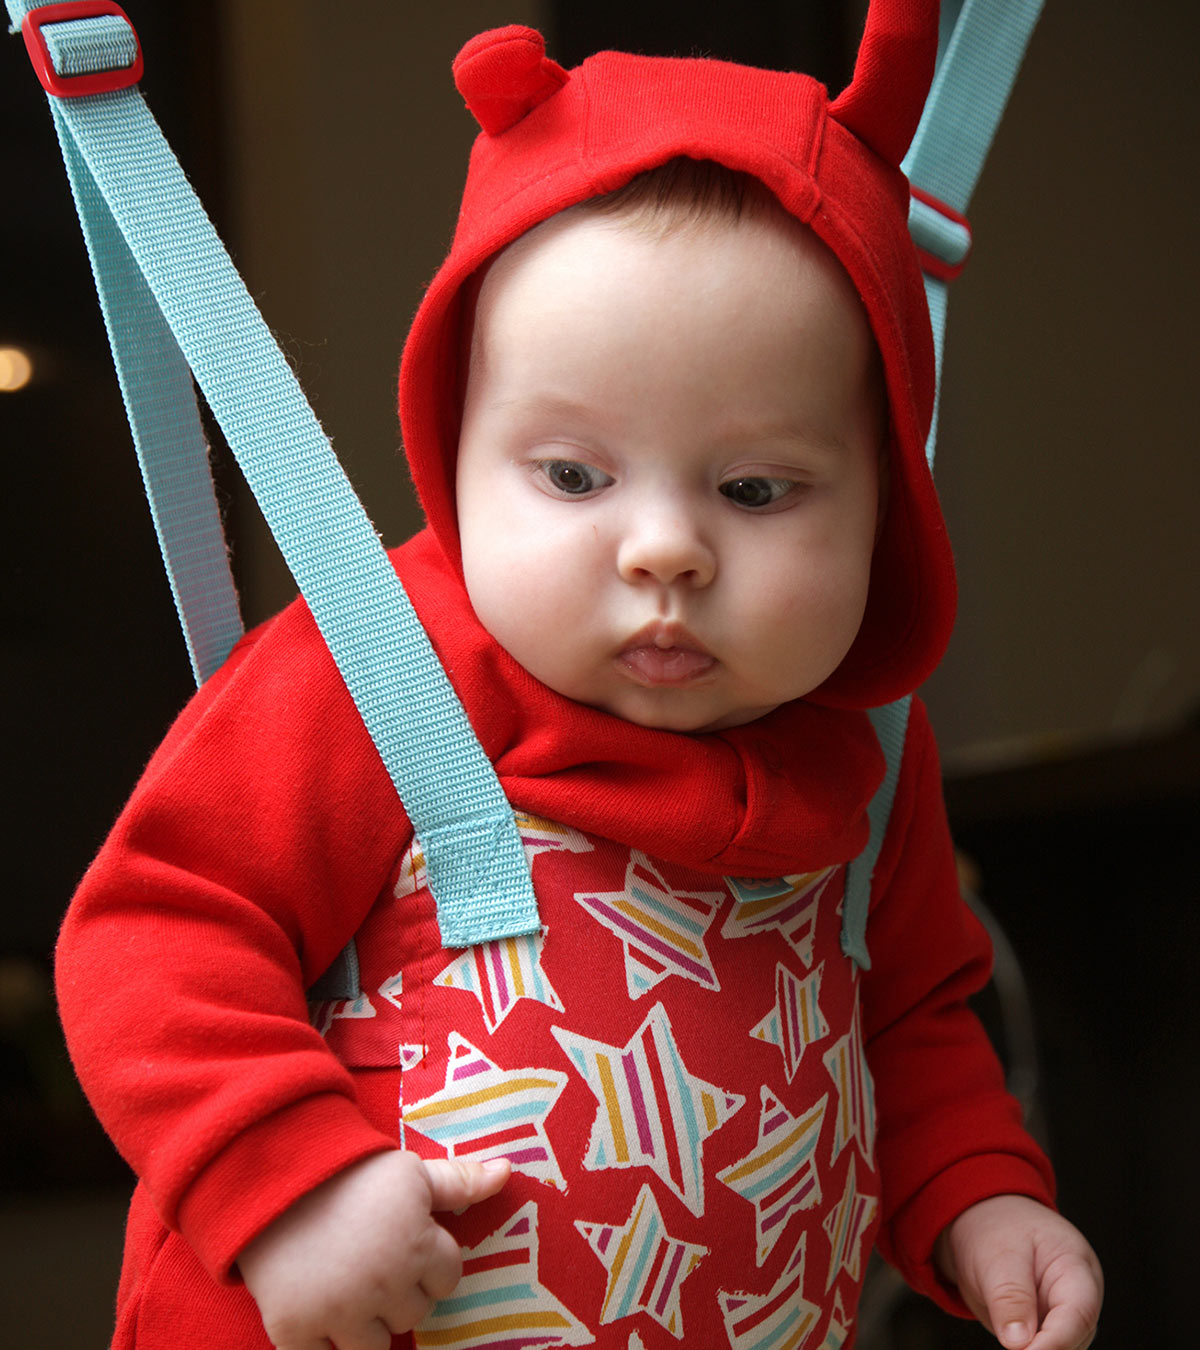 婴儿套头衫安全吗?使用提示、风险和替代方案